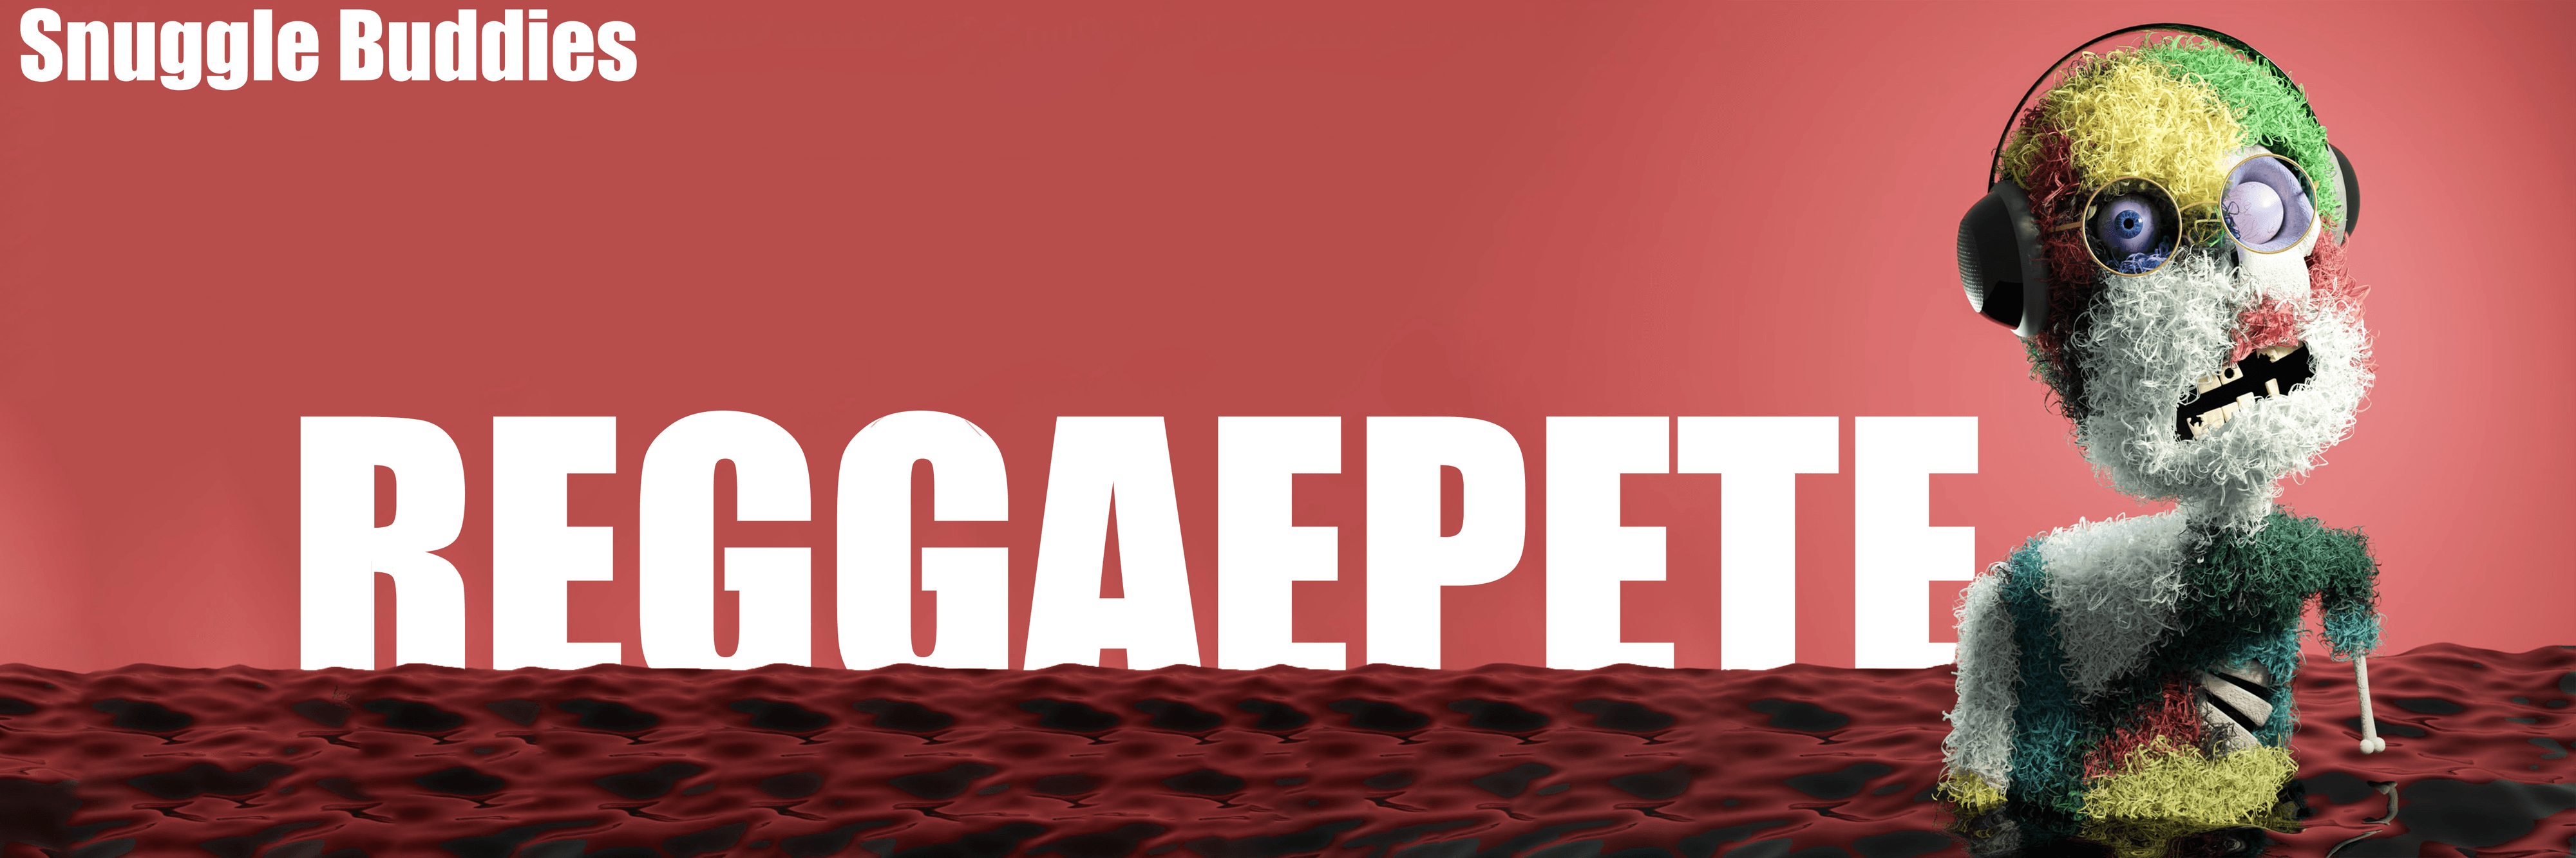 reggaepete banner